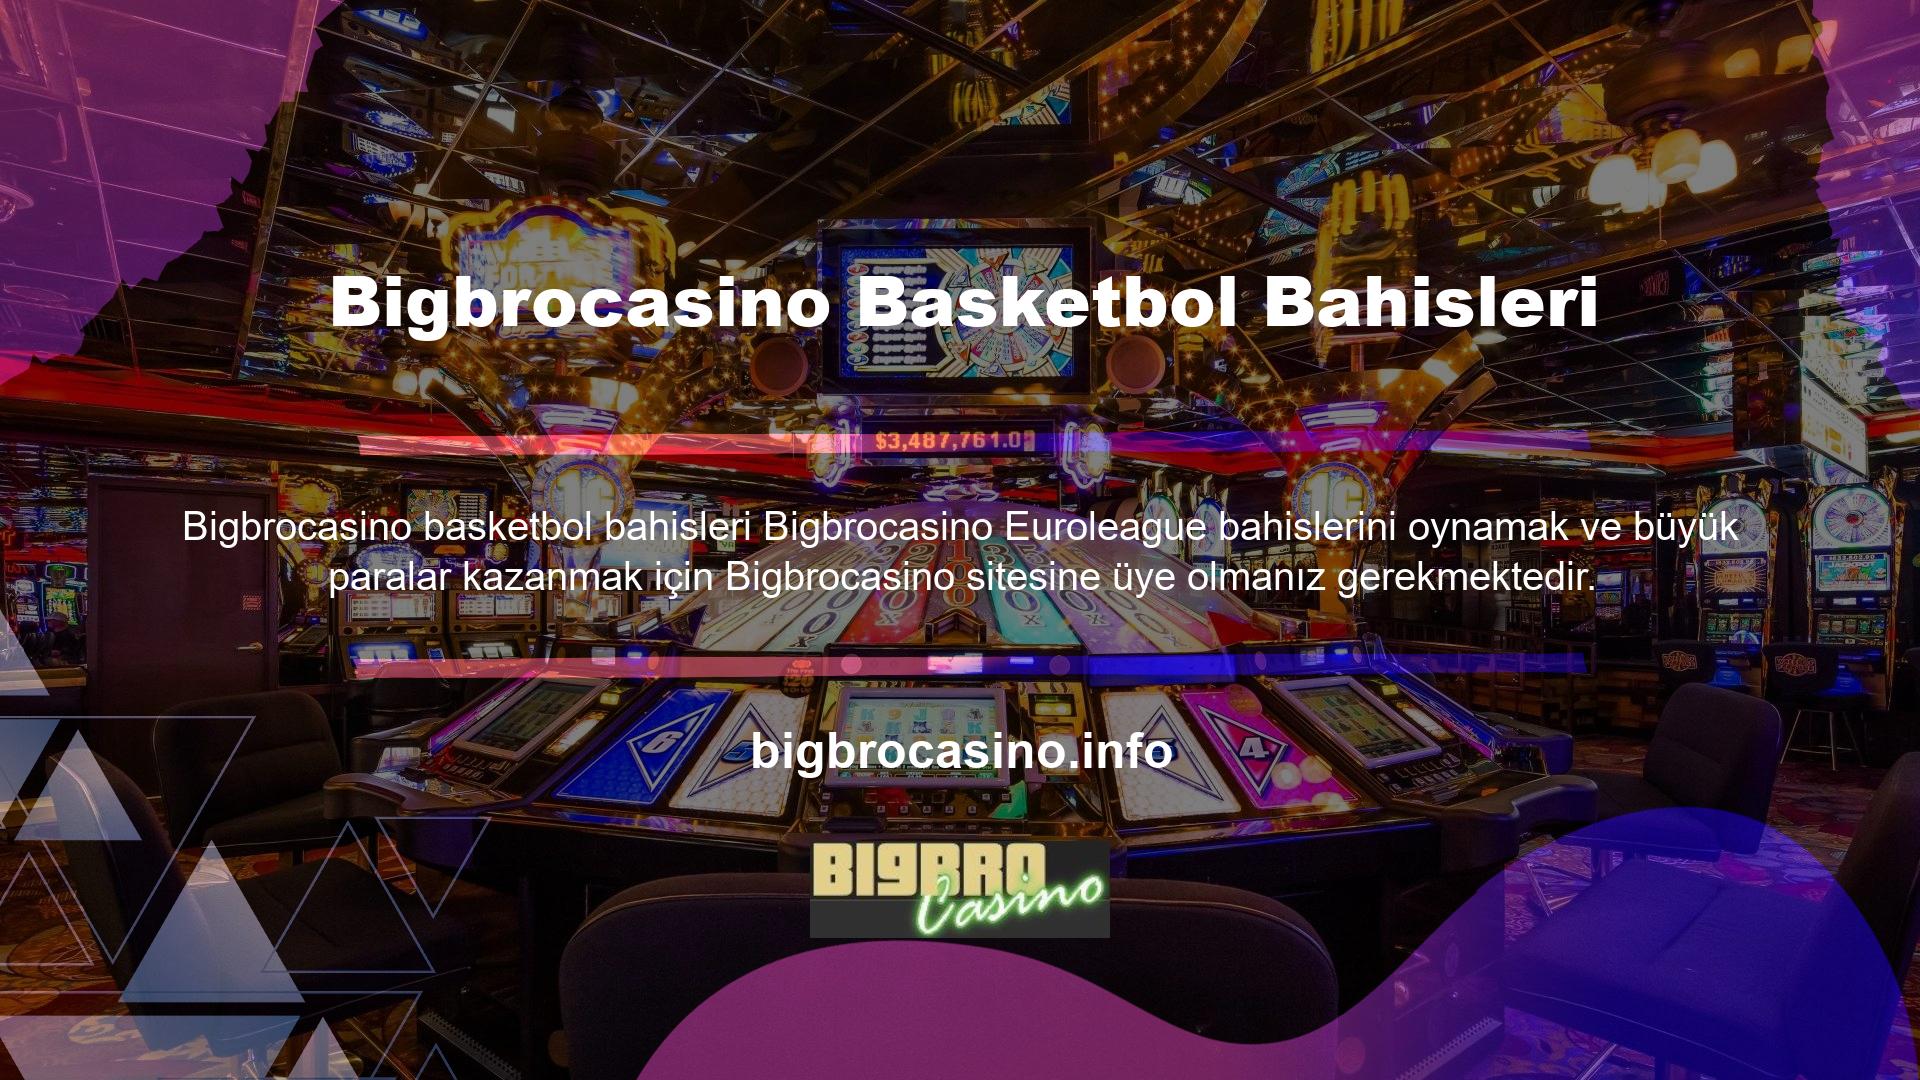 Bigbrocasino Basketbol Bahis Sitesine üye olduktan sonra para yatırarak bahis kuponlarınızı ülkemizde ve Avrupa ülkelerinde geçerli olan basketbol maçlarına maç öncesi ve canlı bahis alternatifleri ile doldurabilirsiniz